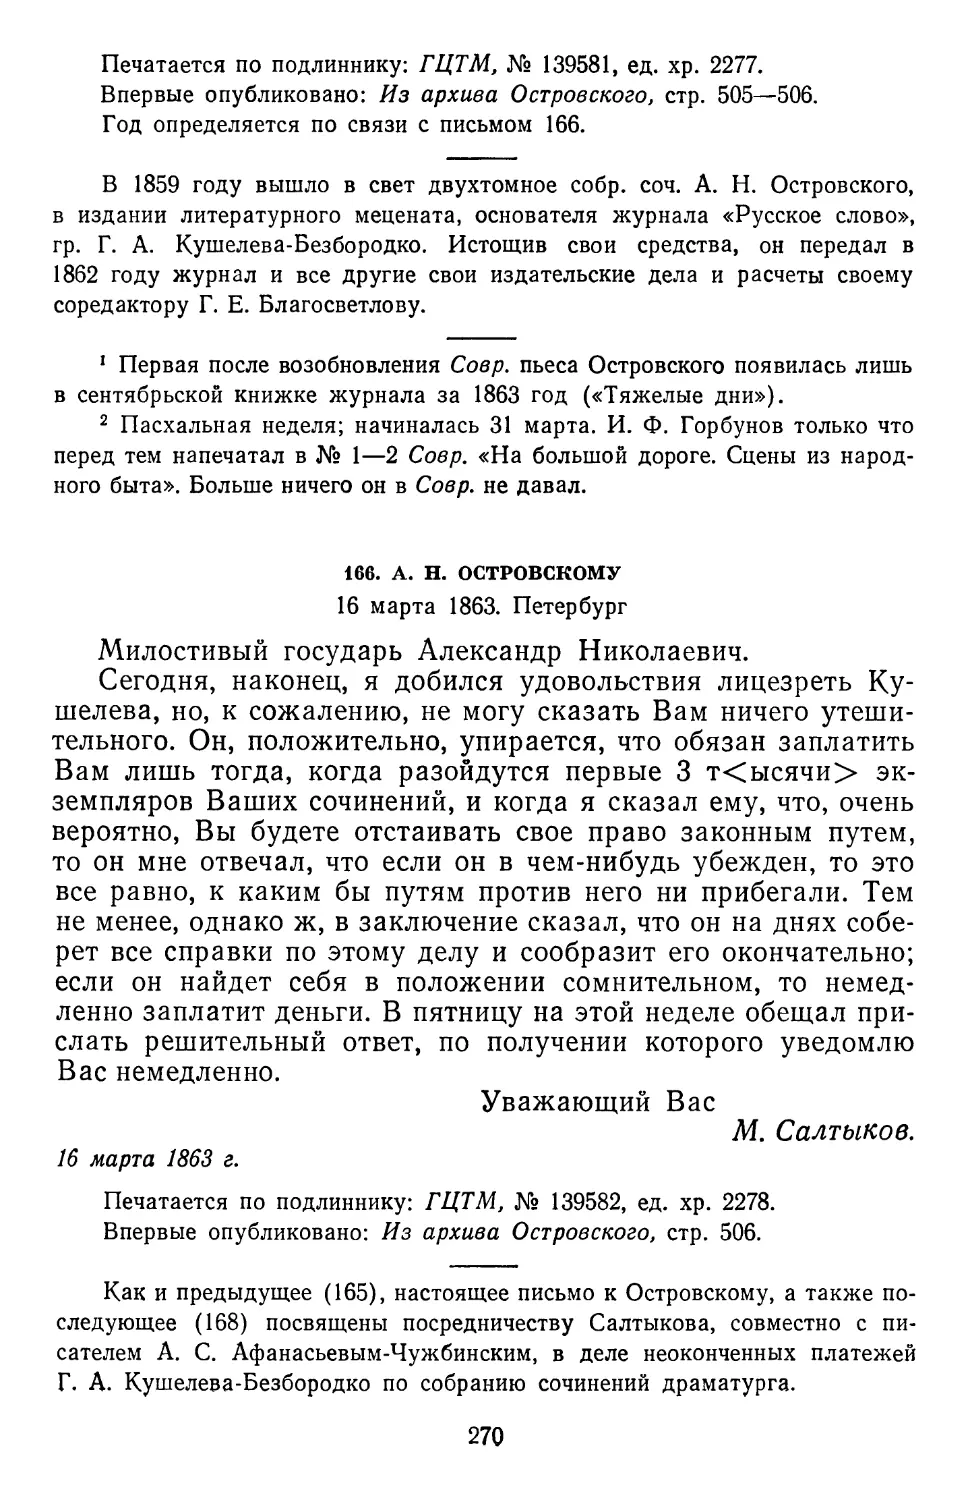 166.А.Н. Островскому. 16 марта 1863. Петербург